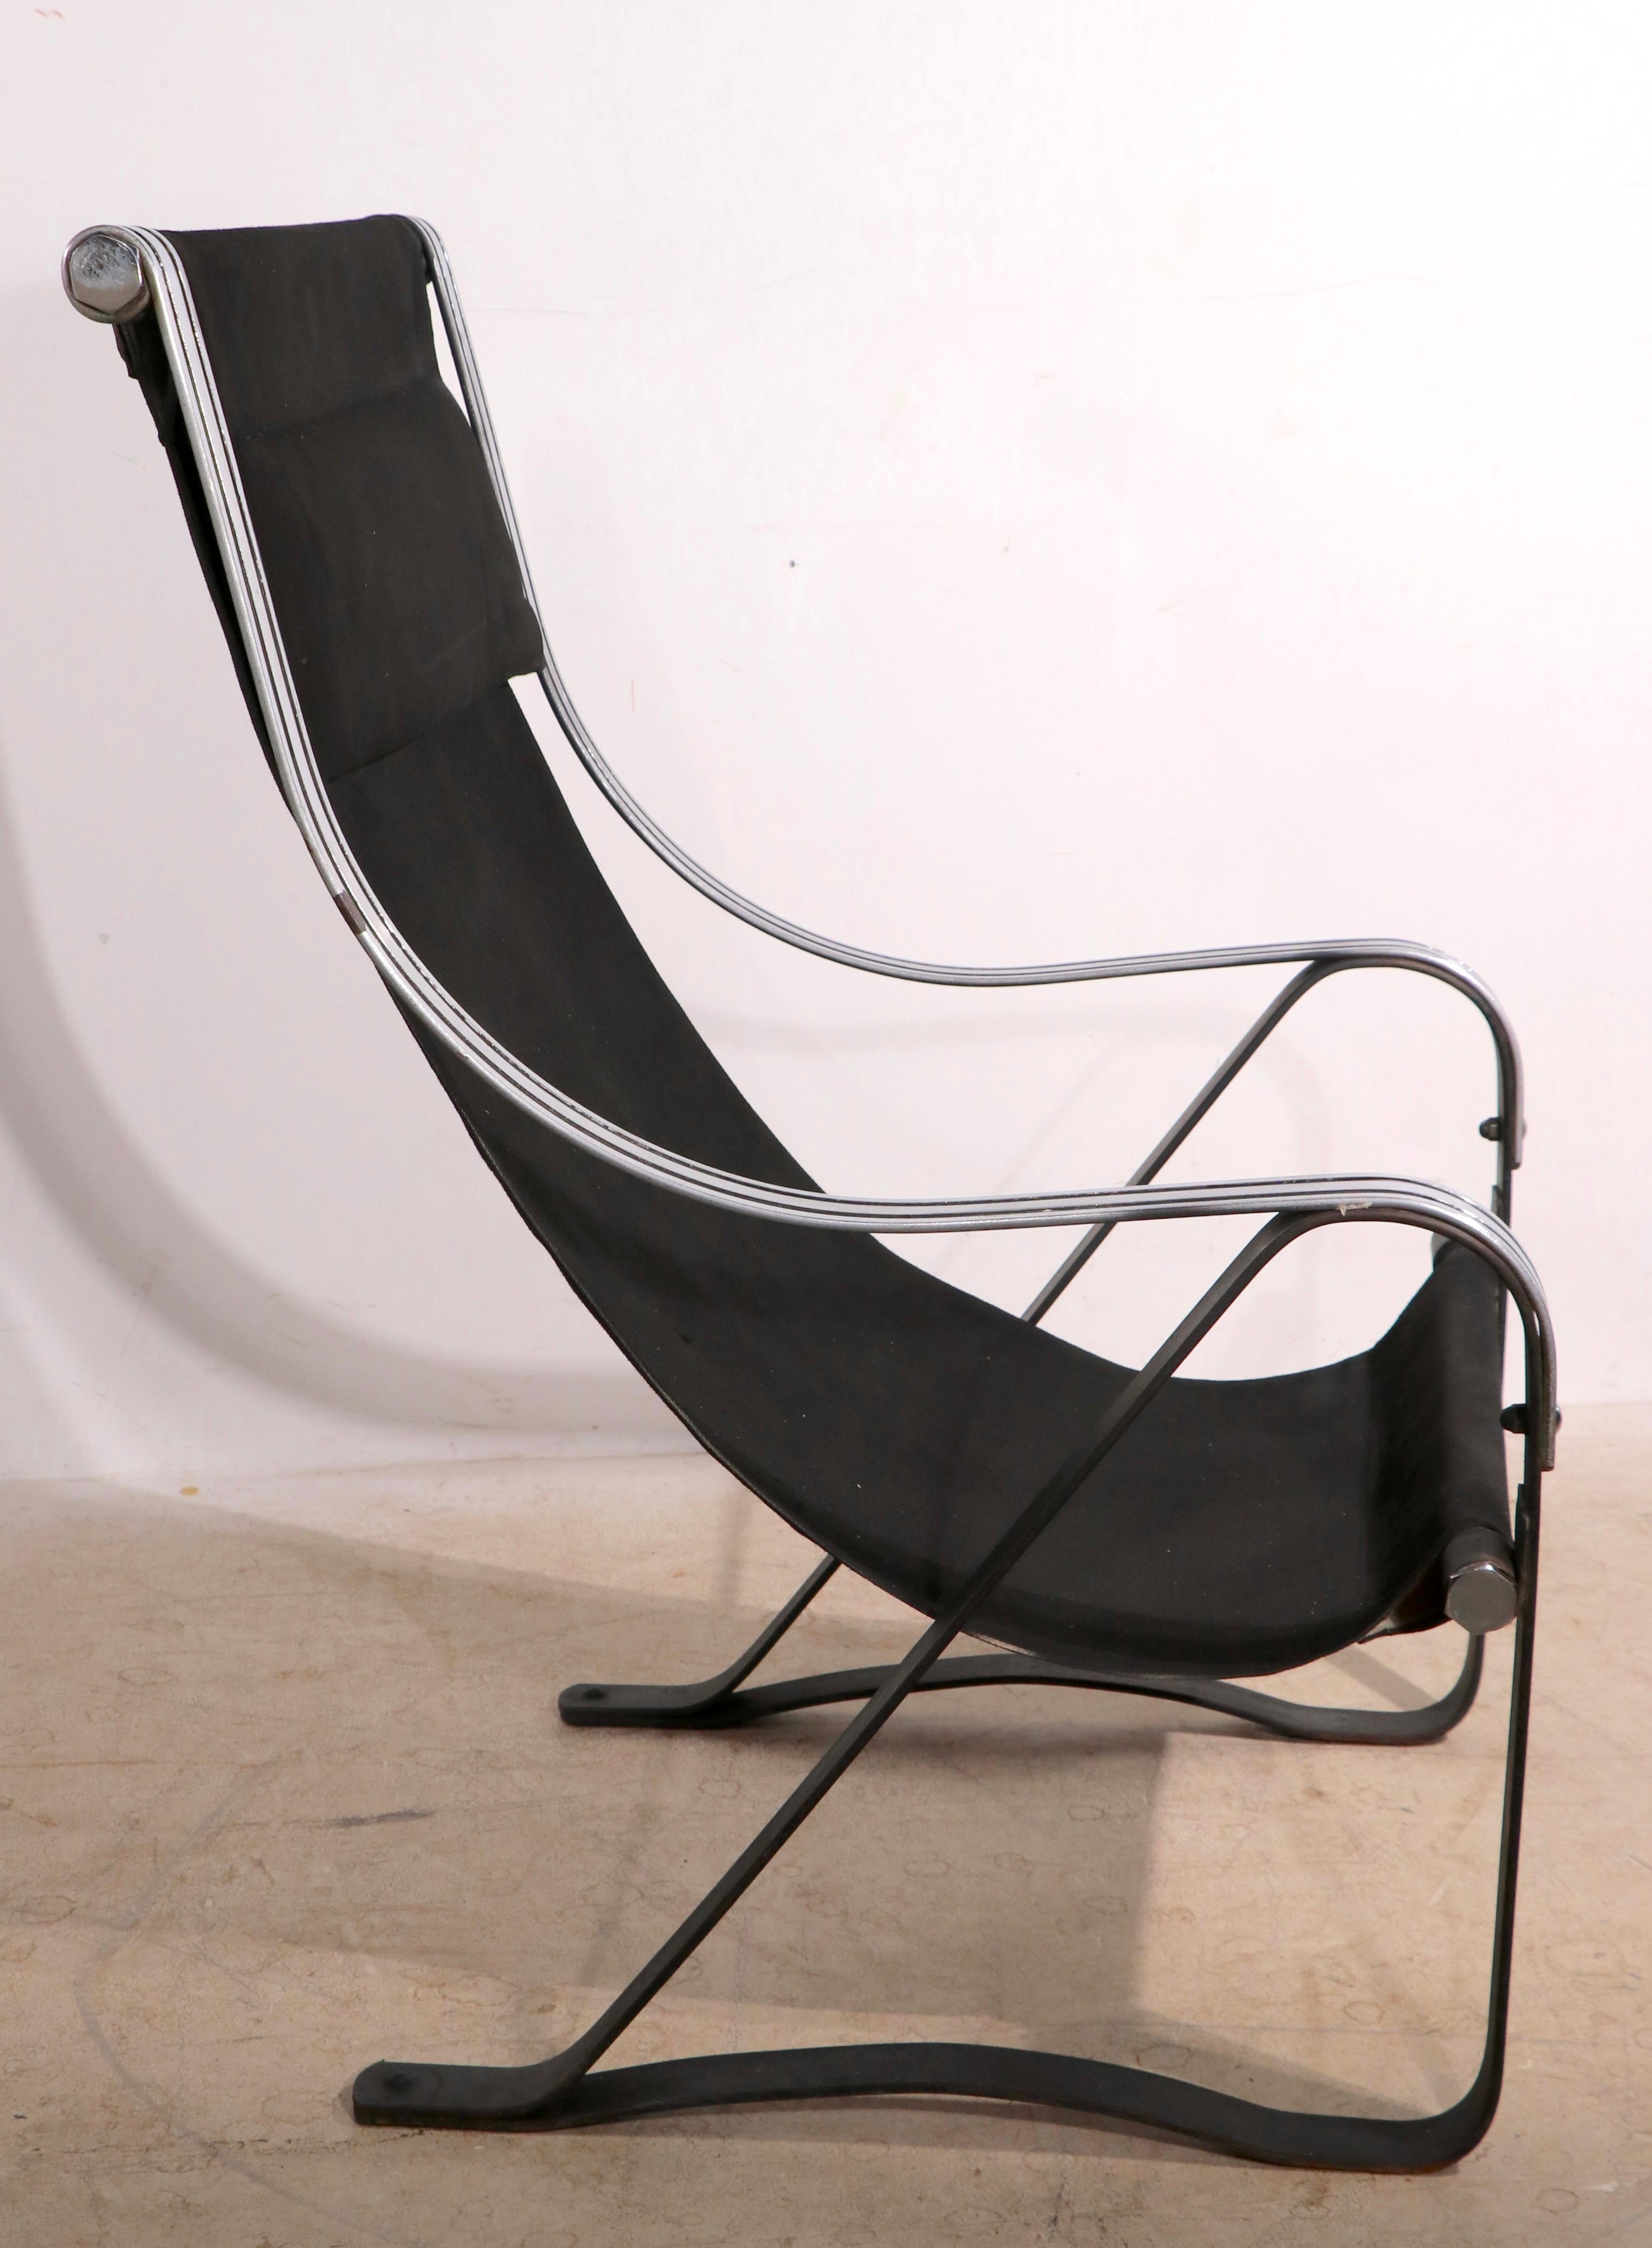 Iconique fauteuil de salon Art Déco, datant de l'ère de la machine, avec d'élégants bras chromés et noirs sur une base à ressorts en acier noirci. La chaise est en très bon état général, le chrome est brillant et éclatant, il présente un défaut sans